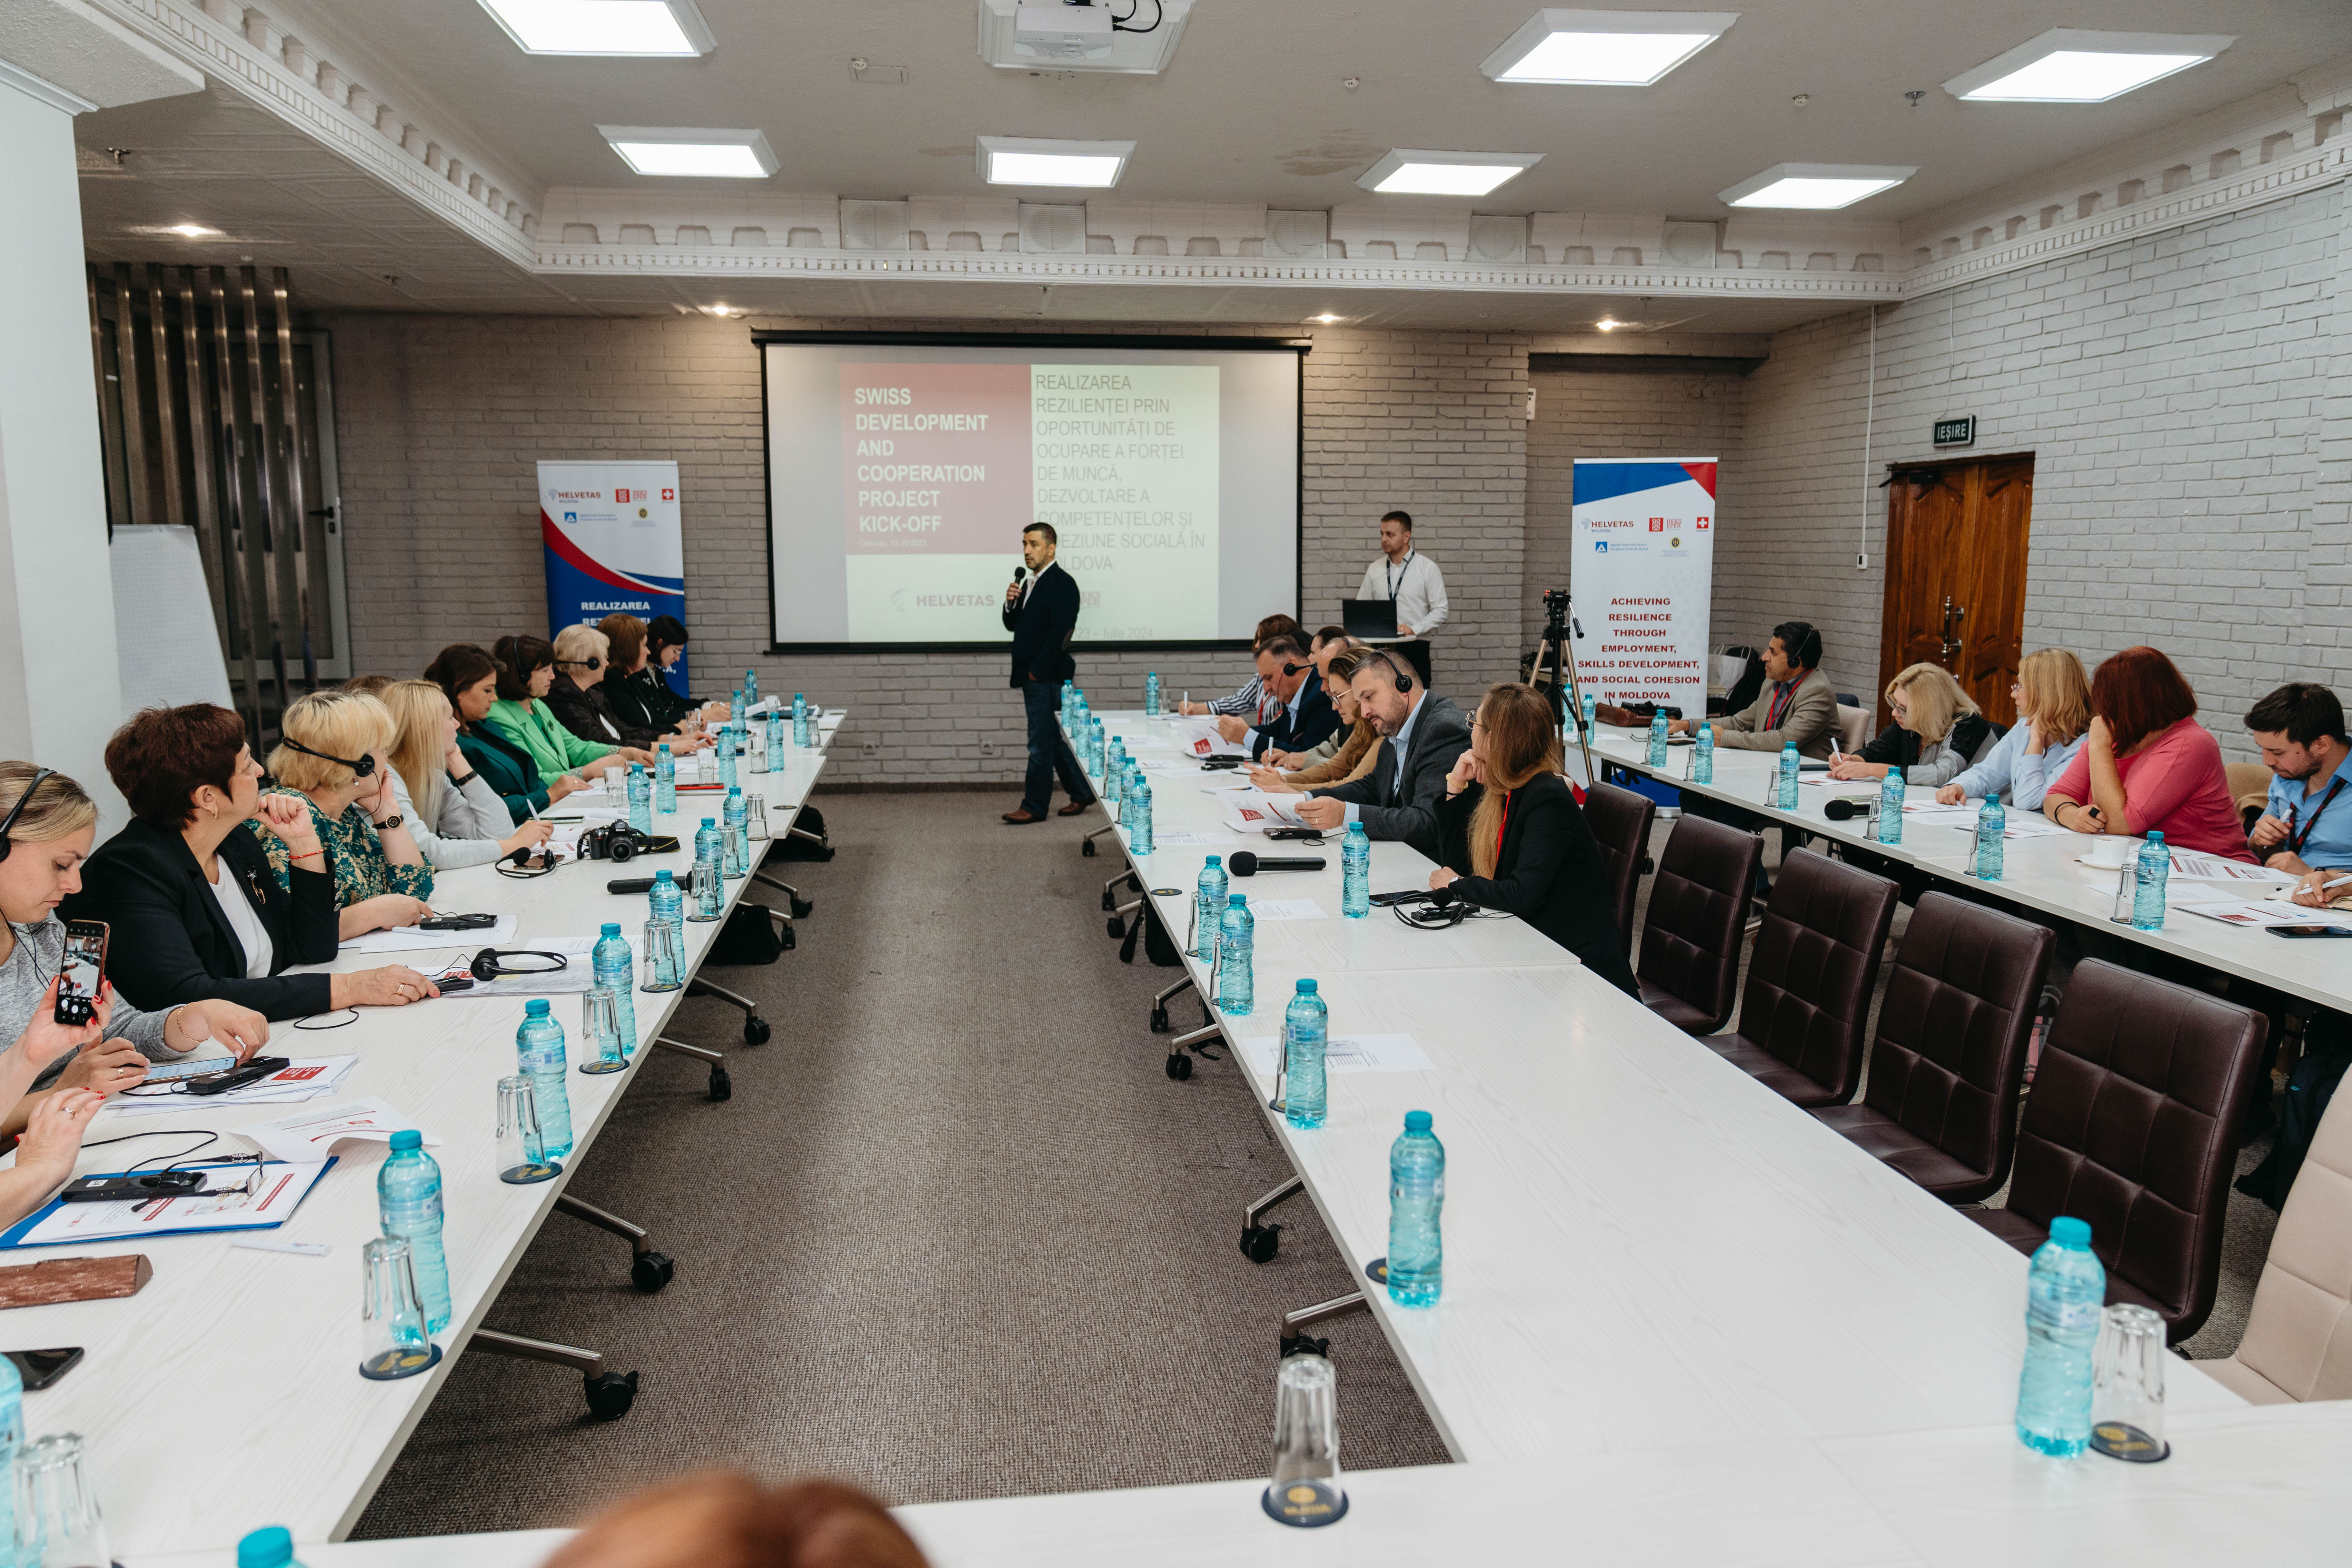 A fost lansat proiectul Realizarea rezilienței prin oportunități de angajare, dezvoltare a competențelor și coeziune socială în Moldova